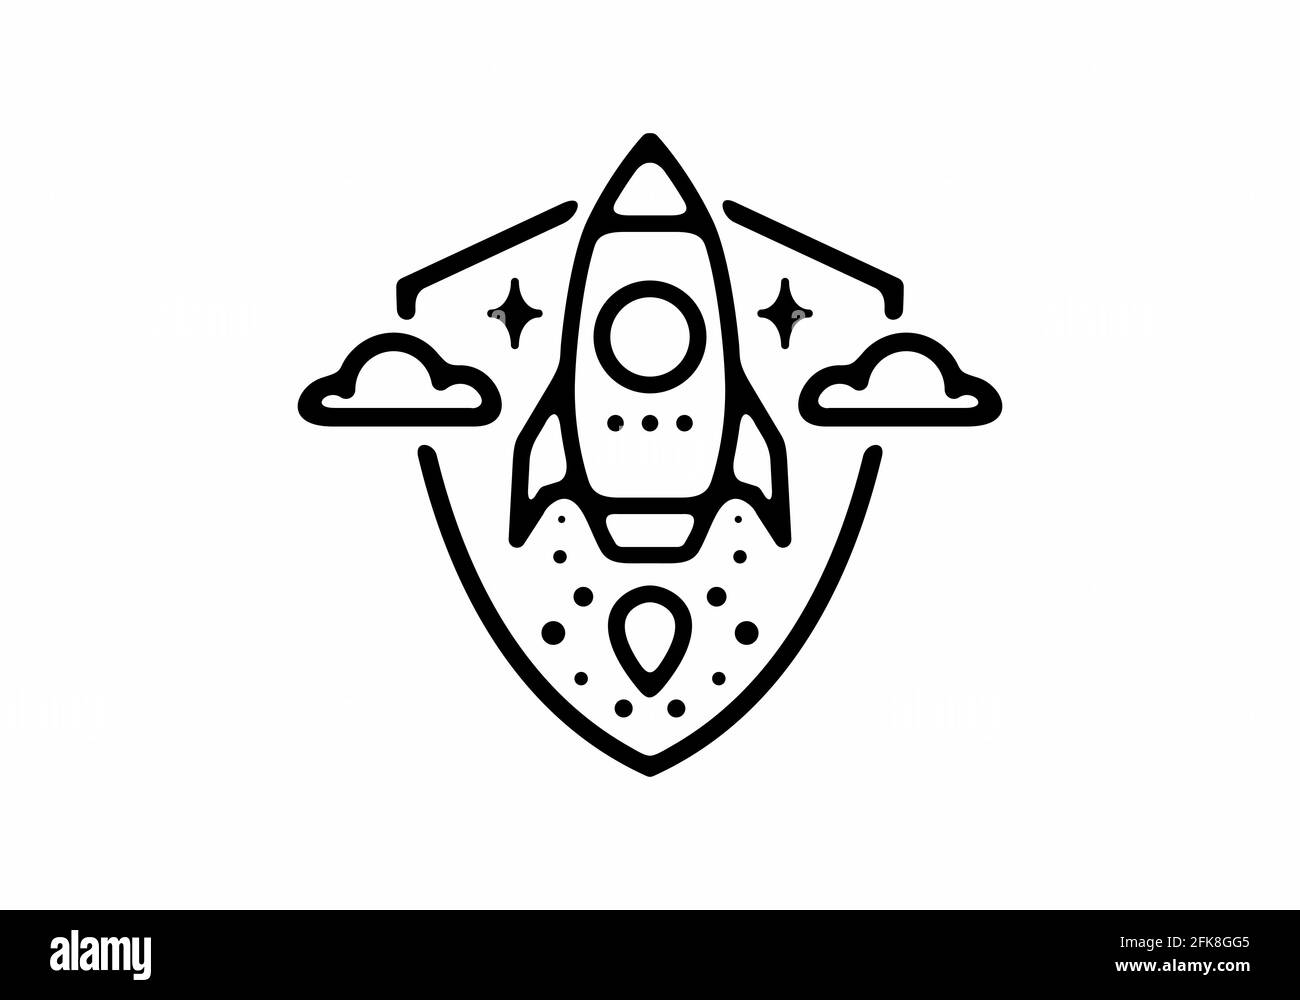 Schwarze Linie Kunst Illustration von Rakete in Schild Form Design Stock Vektor